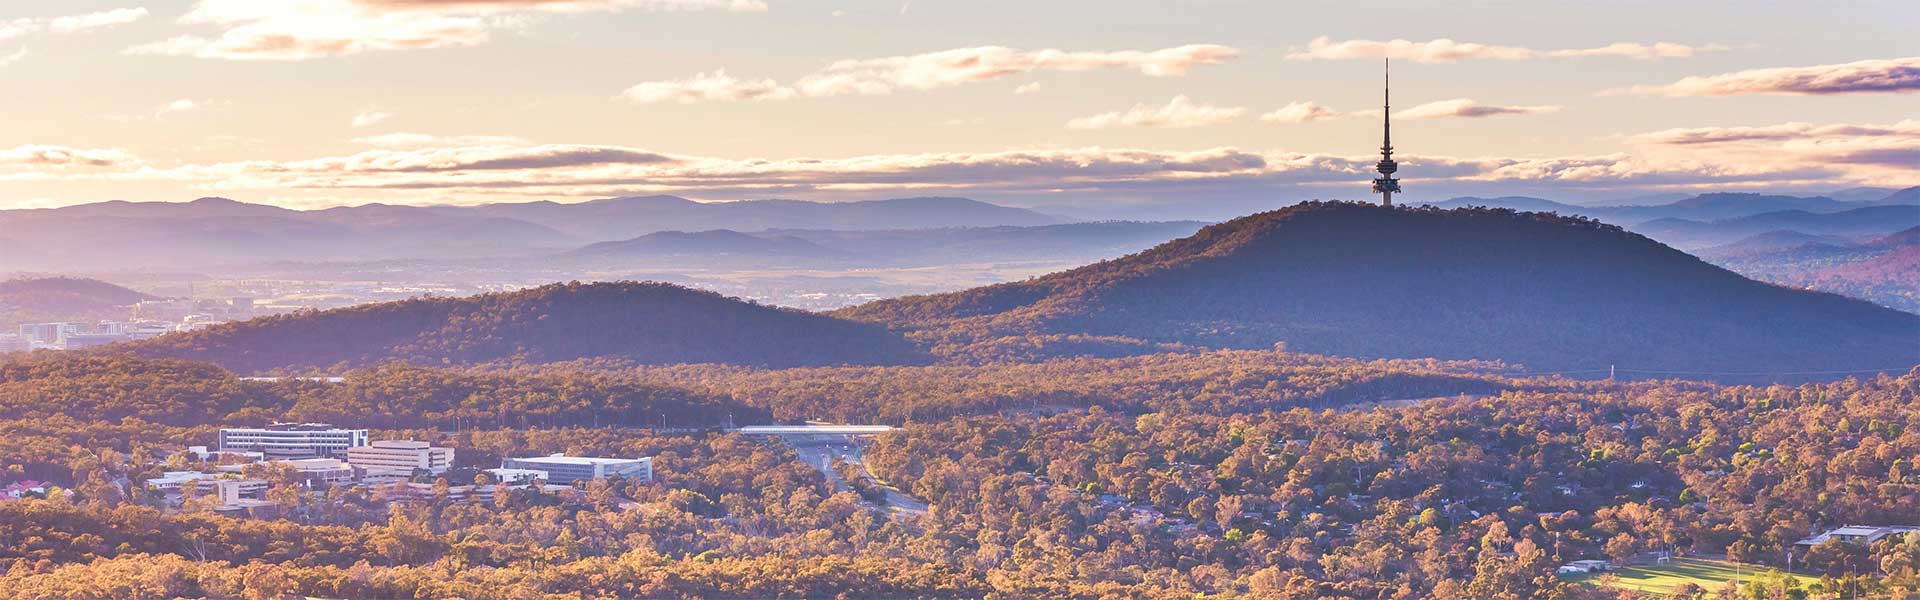 Canberra landscape image